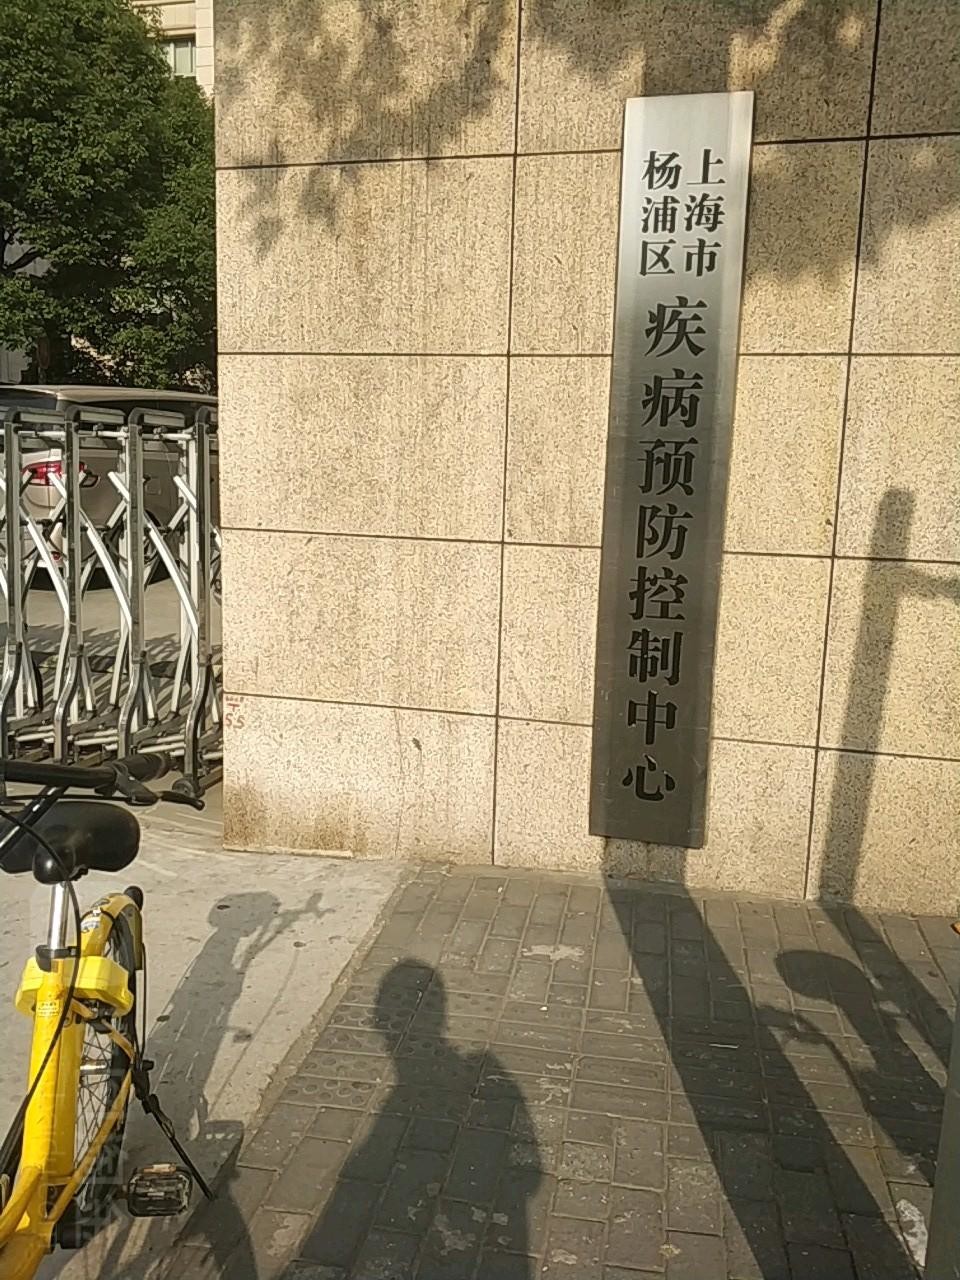 último caso de la compañía sobre Control de enfermedades del distrito de Shangai Yangpu y centro de la prevención